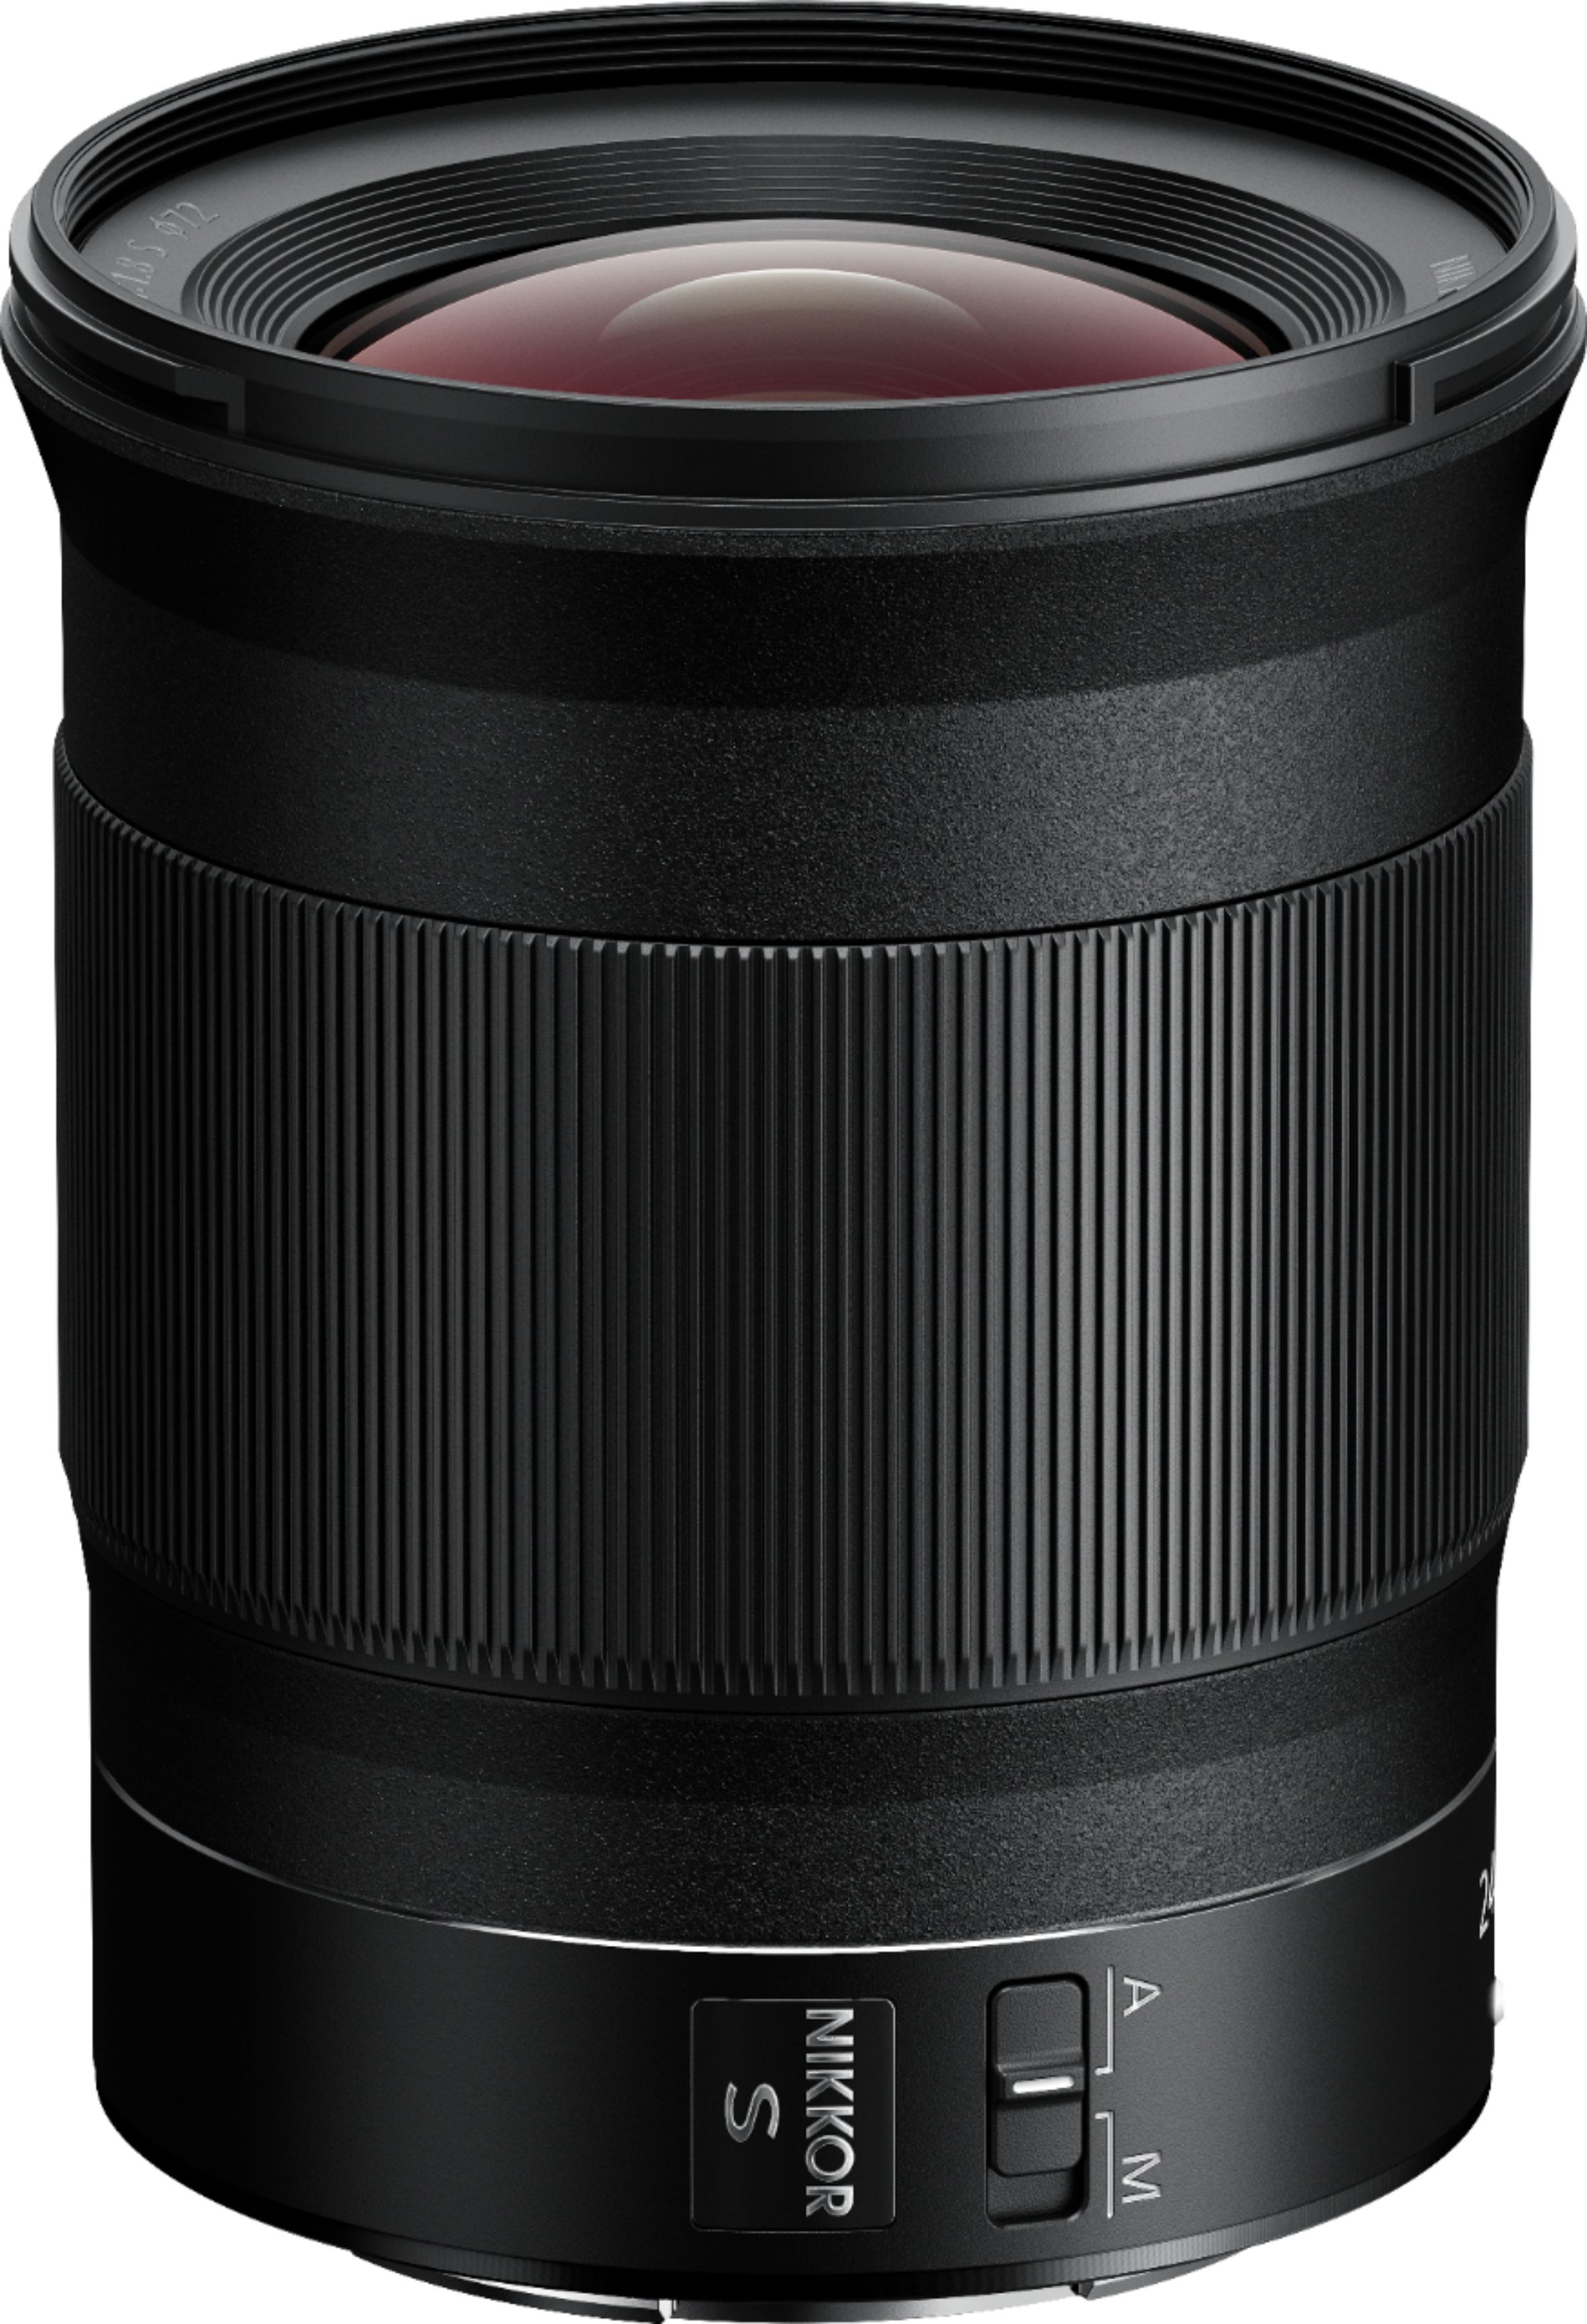 Angle View: NIKKOR Z 24mm f/1.8 S Wide Angle Prime Lens for Nikon Z Cameras - Black